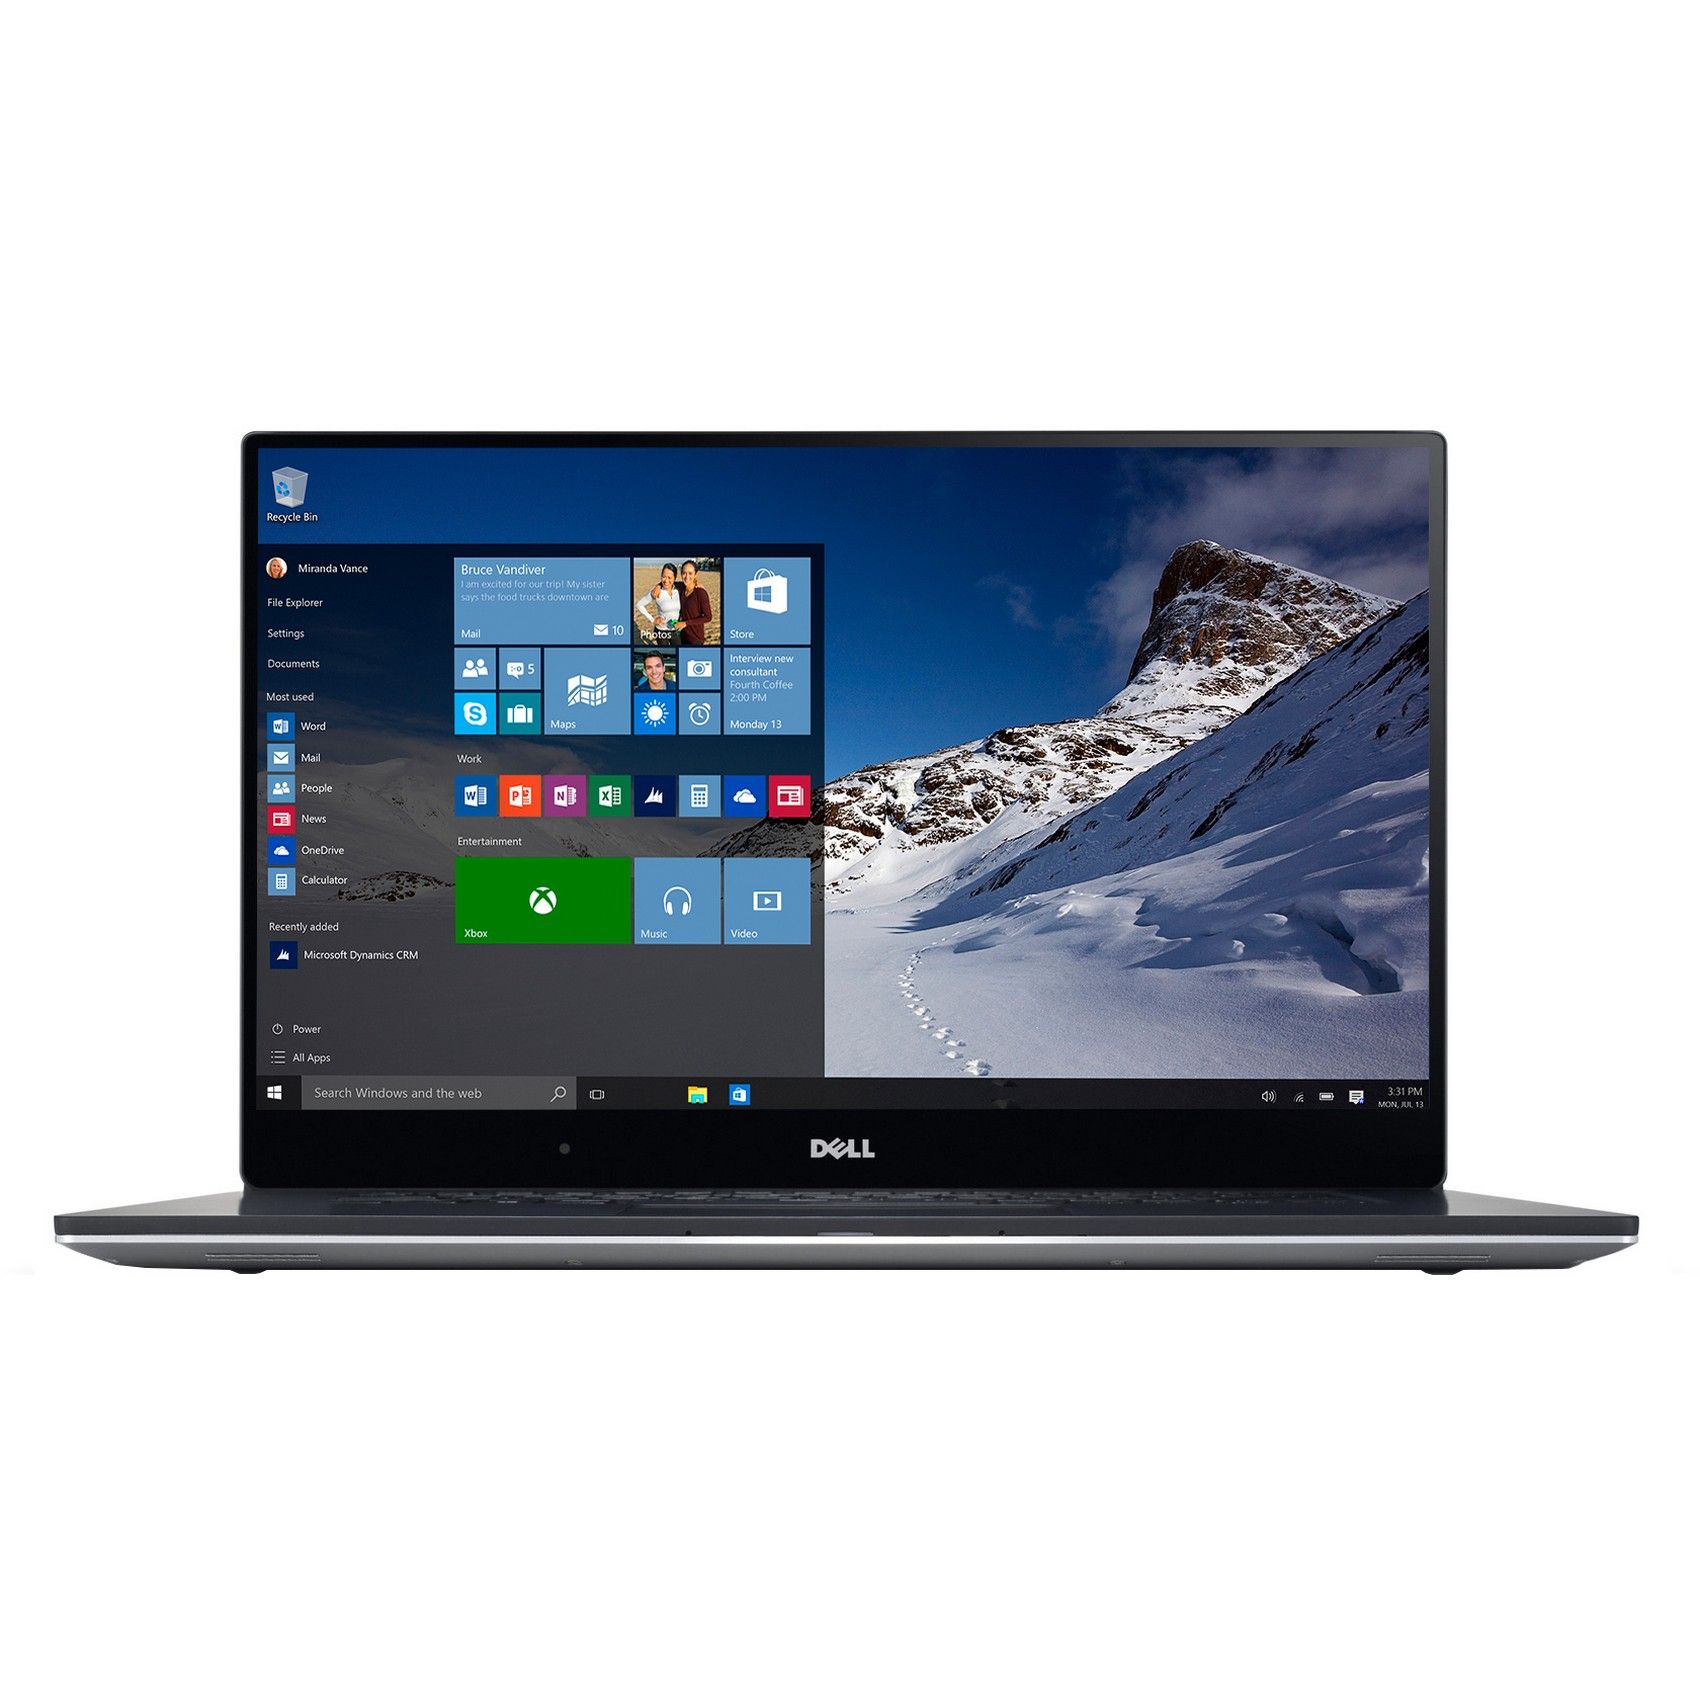  Laptop Ultrabook Dell XPS 9550, Intel Core i5-6300HQ, 8GB DDR4, HDD 1TB + SSD 32GB, nVidia GeForce GTX 960M 2GB, Windows 10 